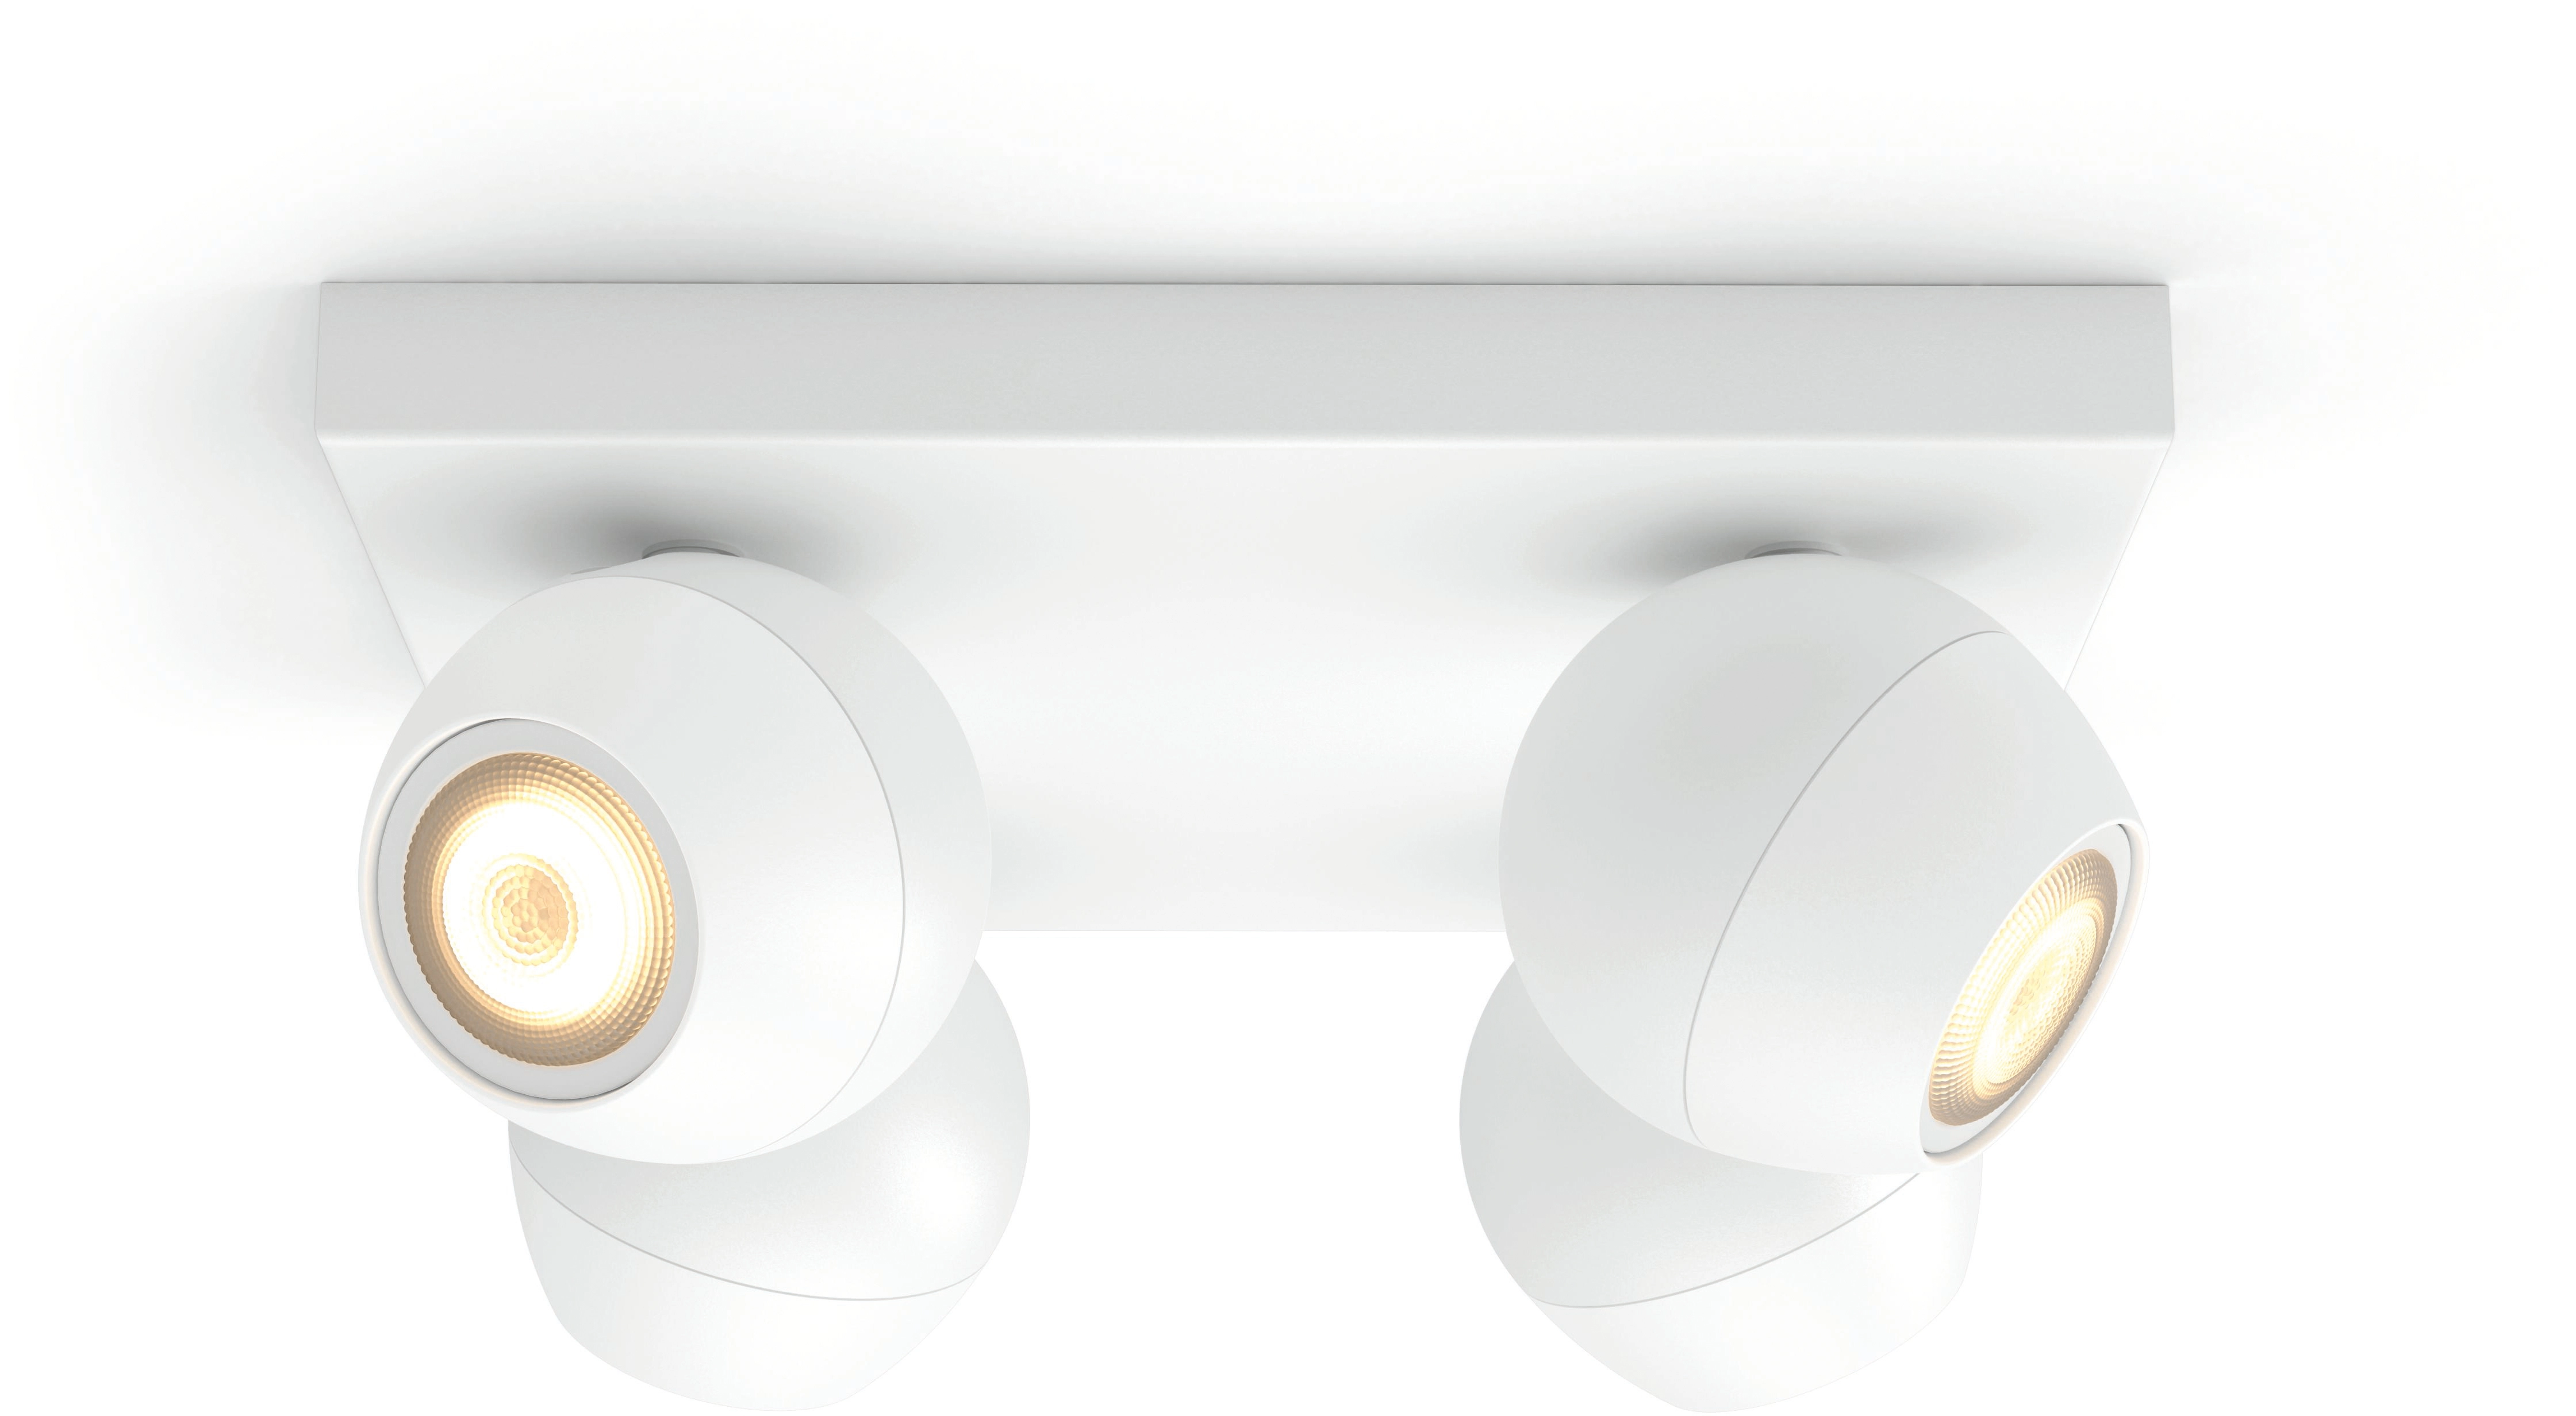 Philips Hue Spot 4-flg. White Ambiance Buckram Weiß 4 x 250 lm inkl. Dimmer  kaufen bei OBI